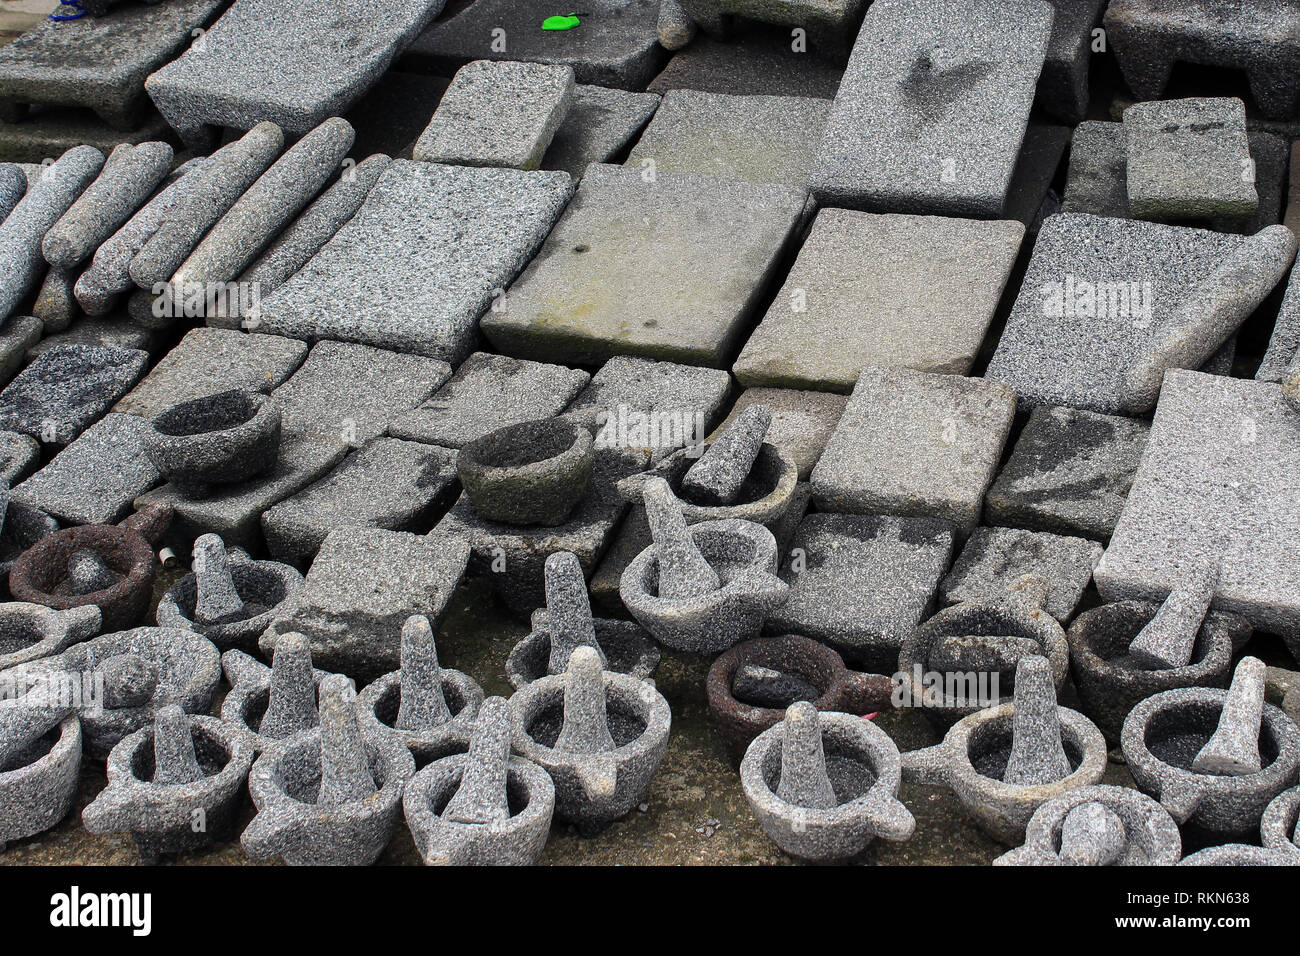 Equipo ; Material de Piedra usados actualmente por Campesinos en Guatemala y México, utilizados para Sincopar y moler Alimentos Stockfoto